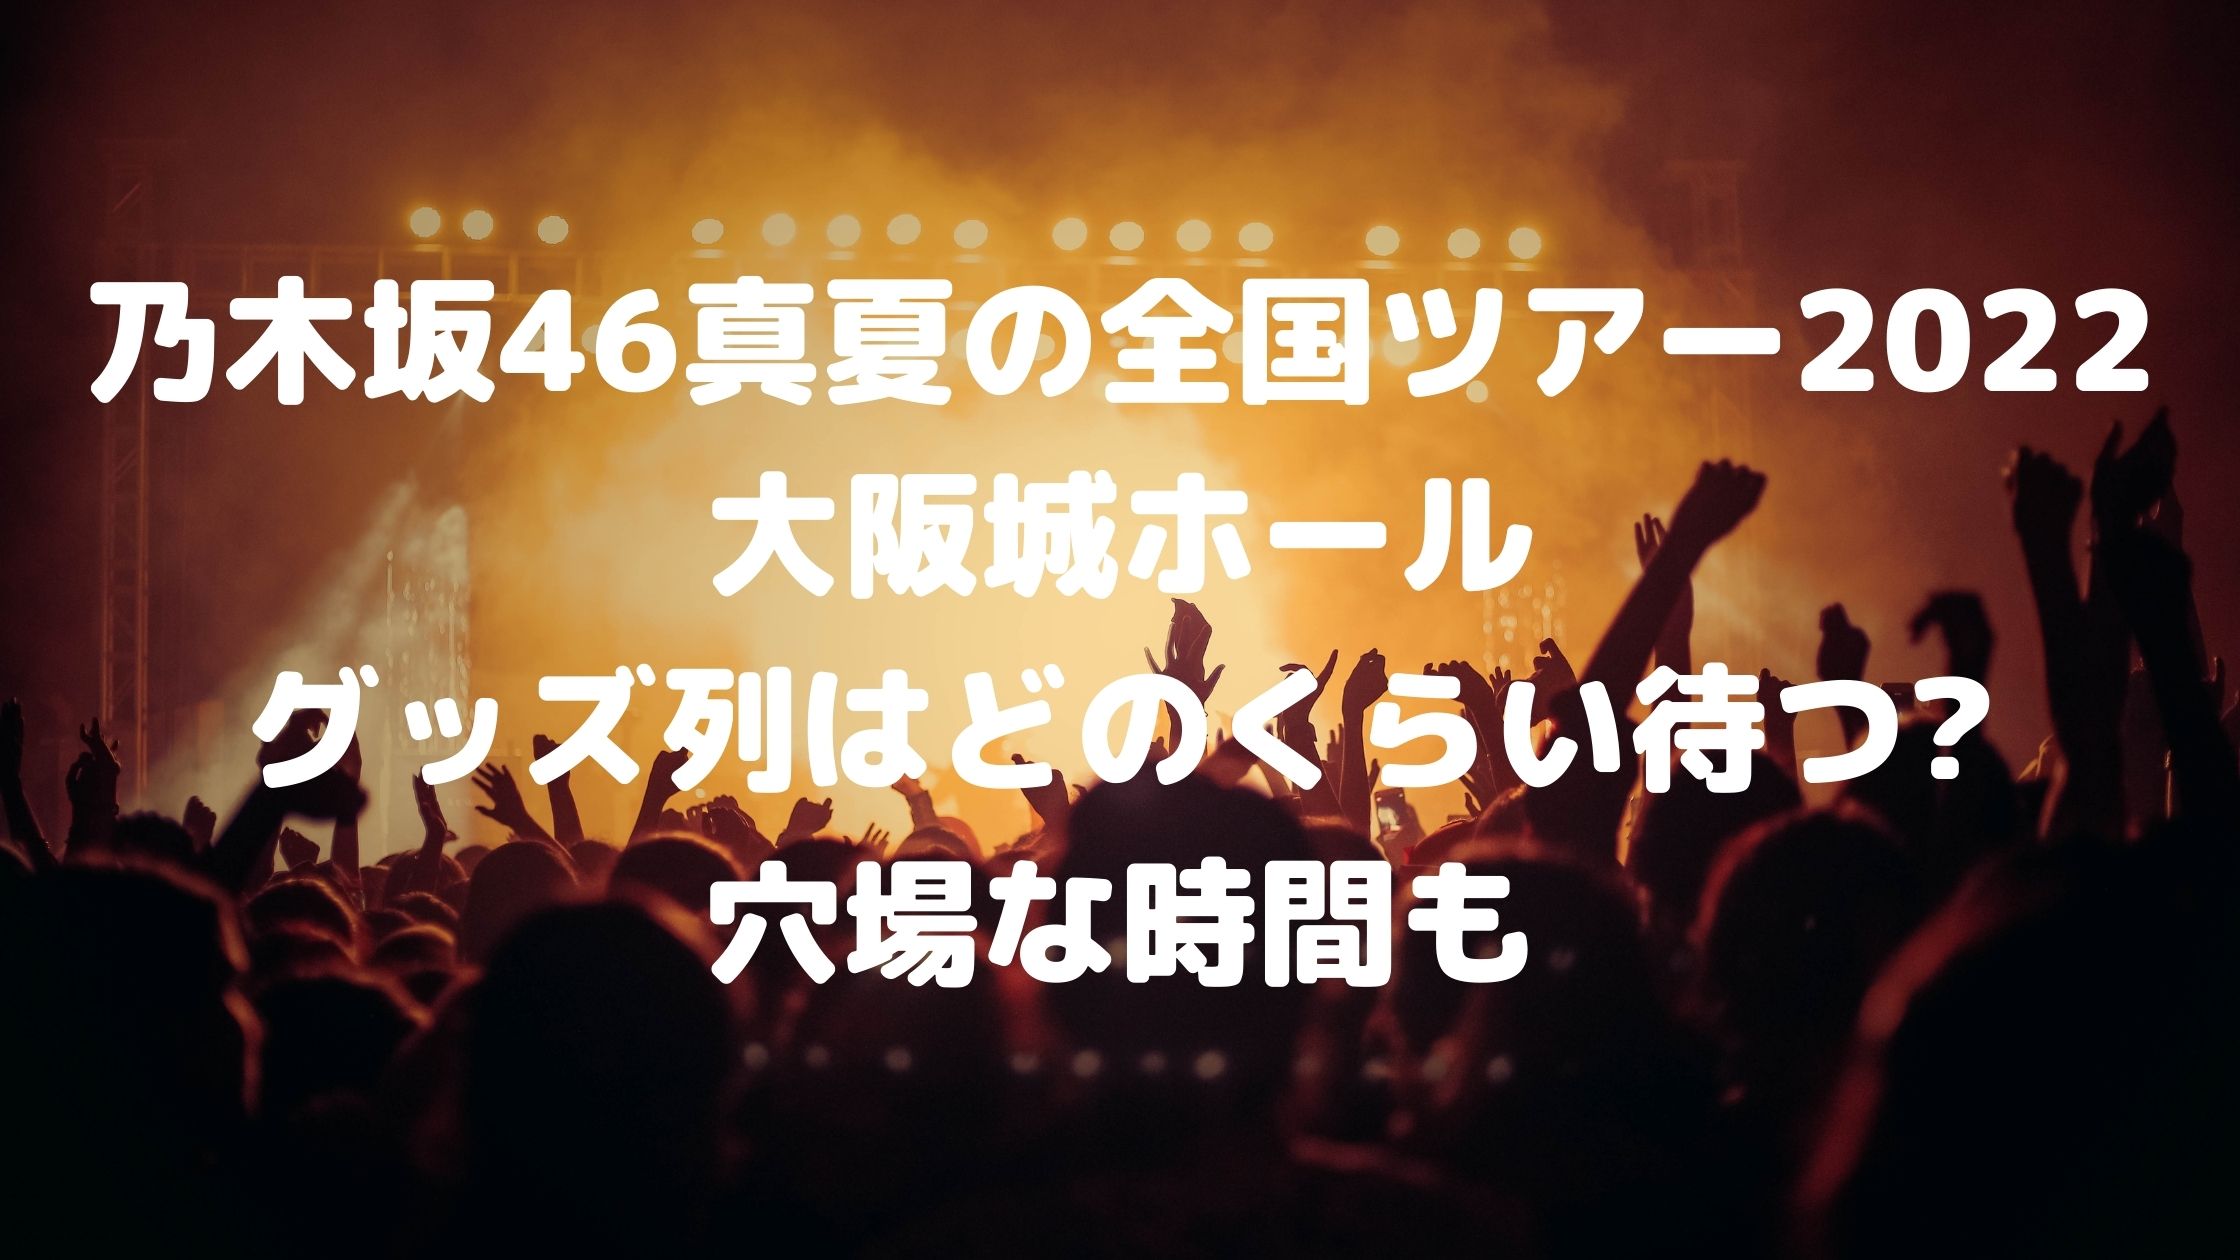 乃木坂46真夏の全国ツアー22大阪城ホール グッズ列はどのくらい待つ 穴場な時間も 混雑してる